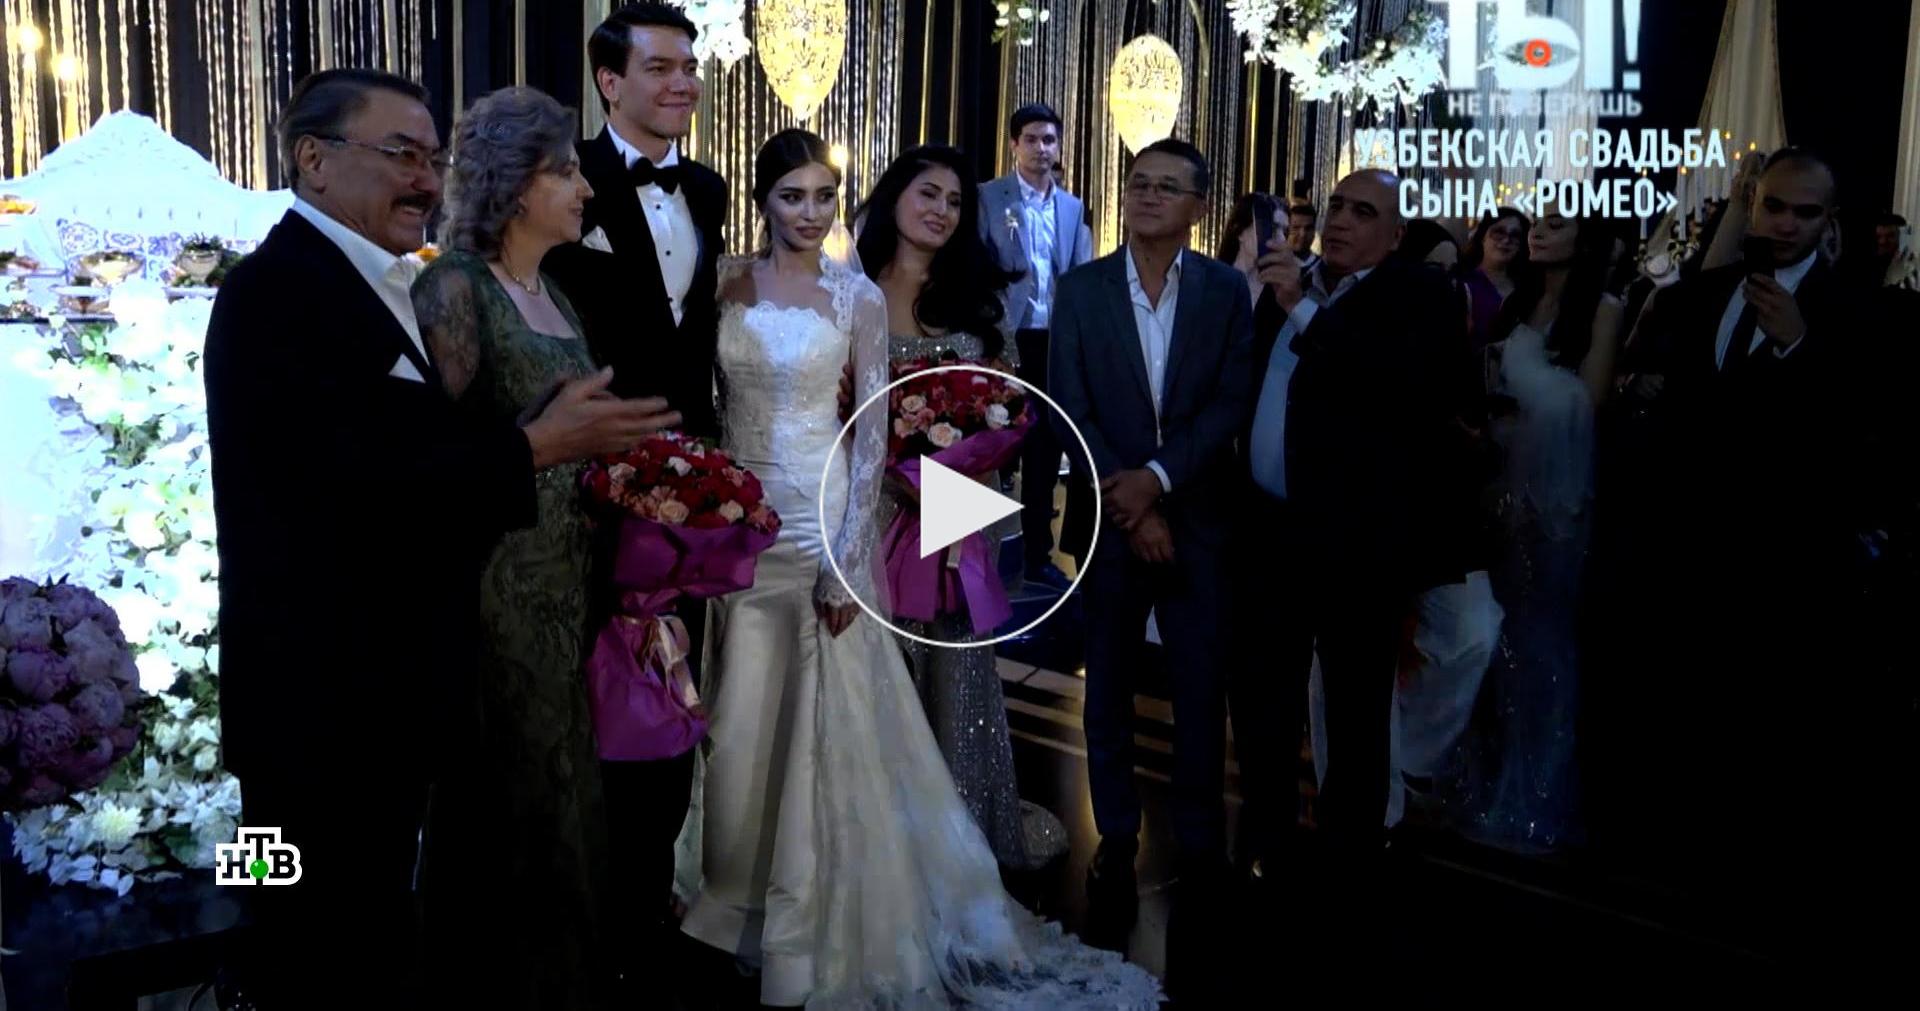 В позе брака: в Узбекистане утвердили правила проведения свадеб | Статьи | Известия